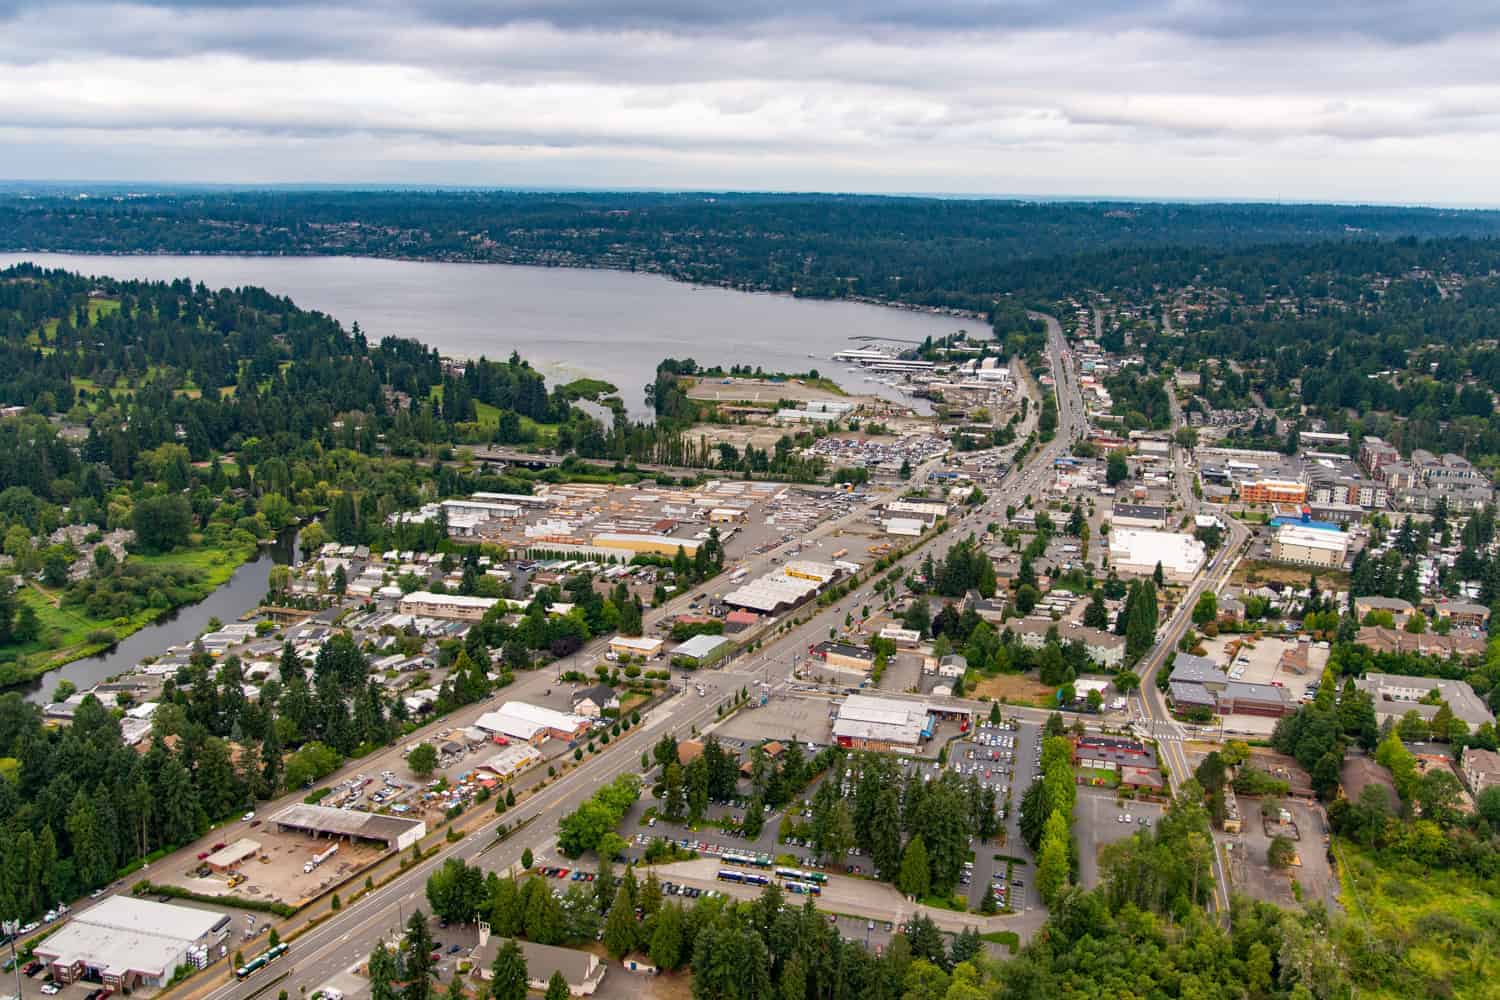 Kenmore, Washington State